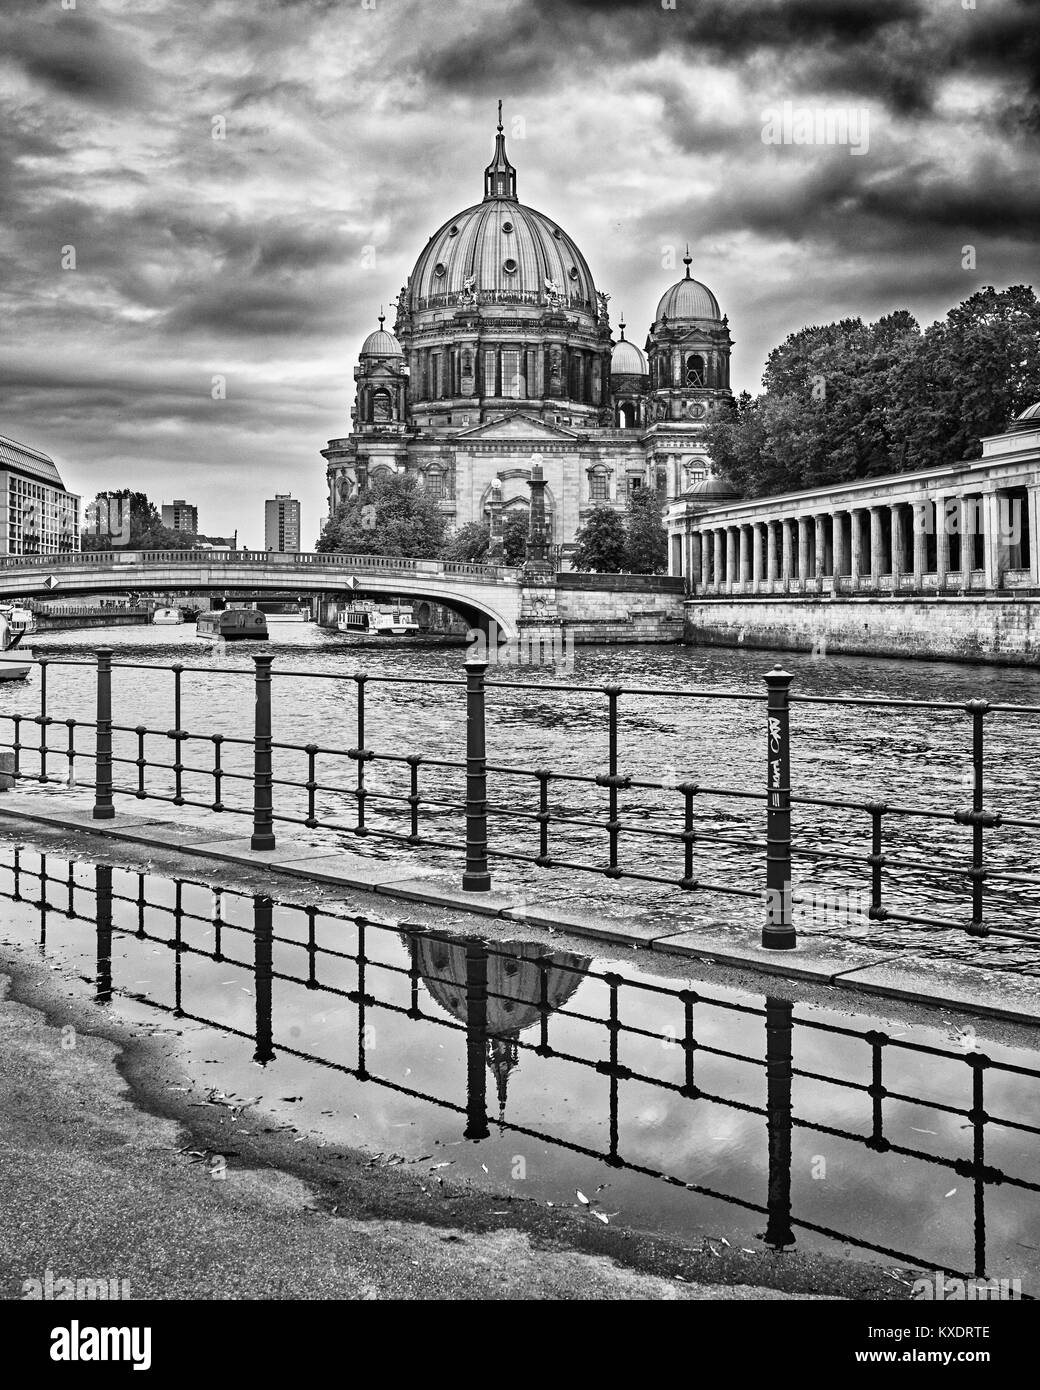 Cattedrale di Berlino, Berliner Dom, suggestiva atmosfera invernale - fotografia in bianco e nero Foto Stock